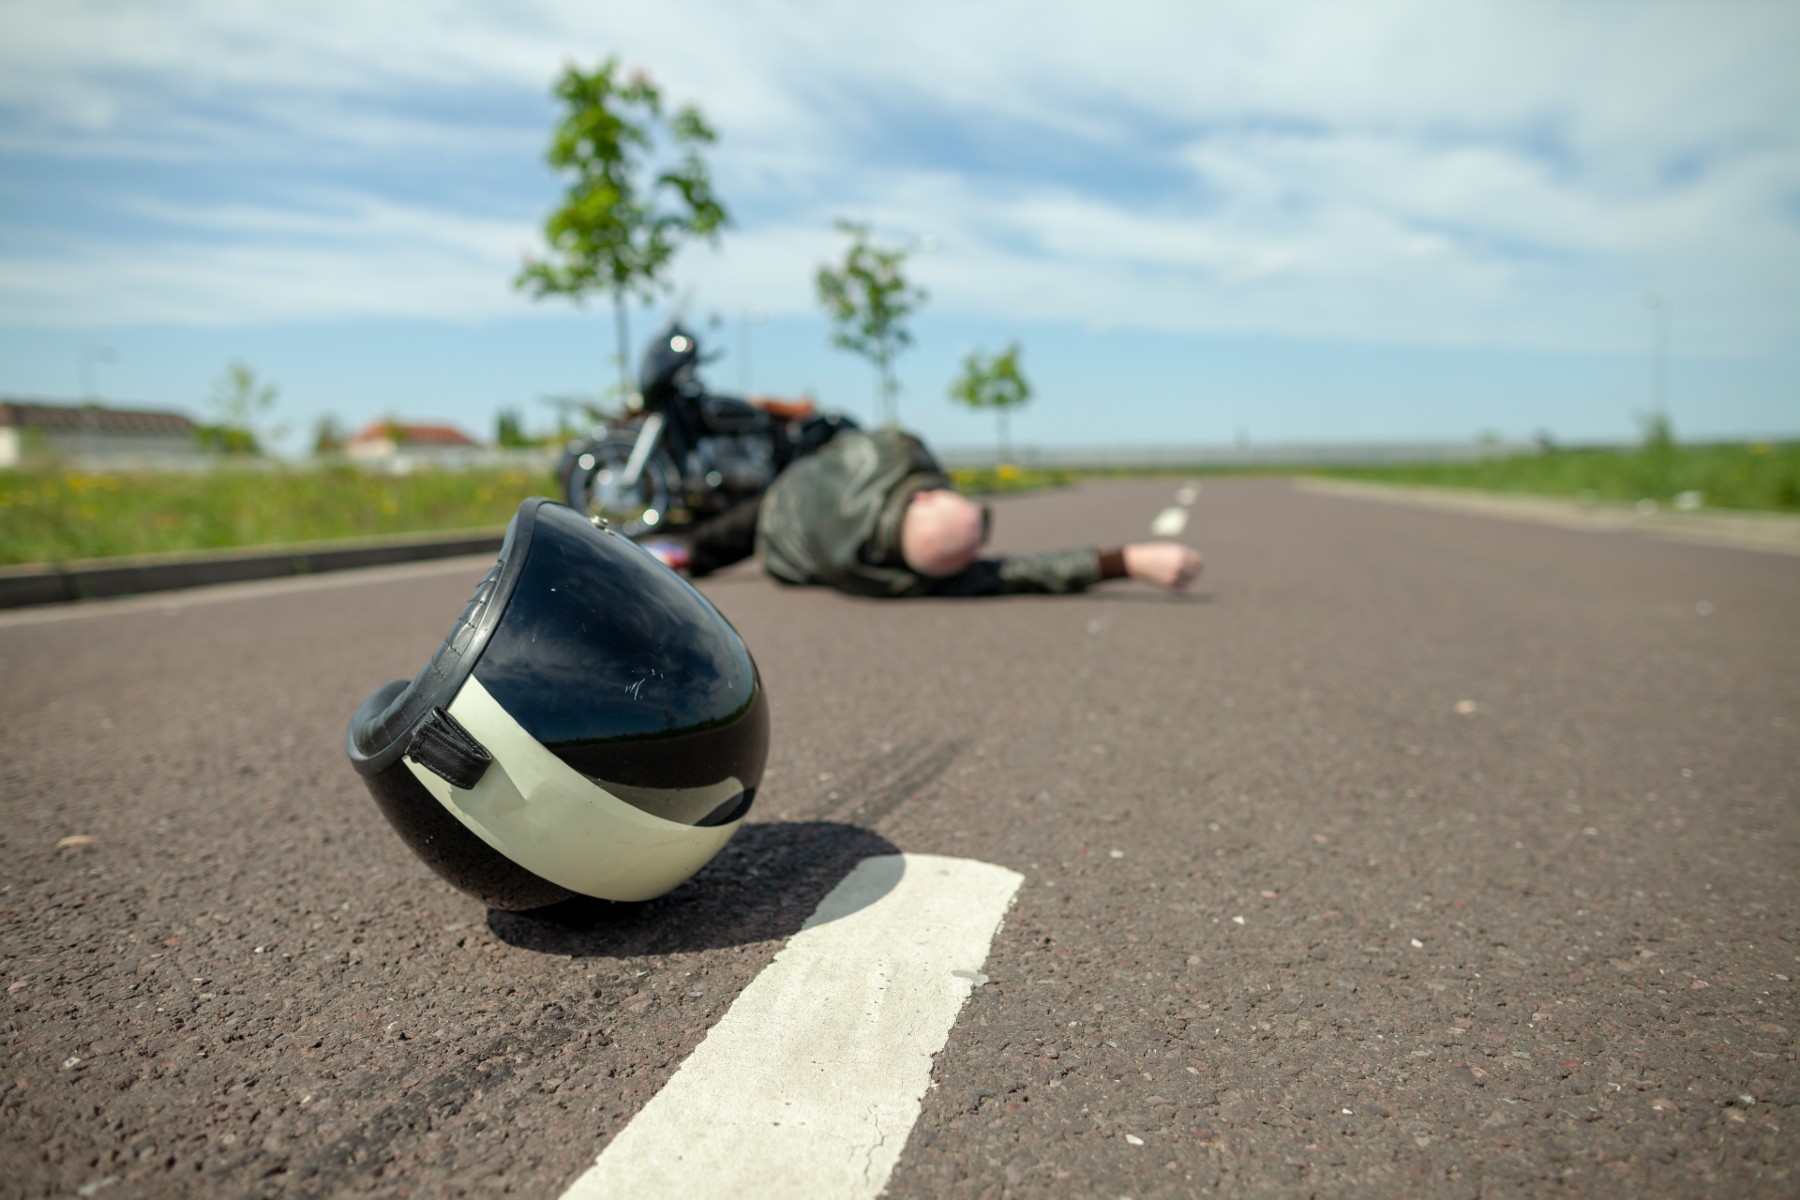 Una farola, alcohol, un coche a la fuga: radiografía de los accidentes de moto en España